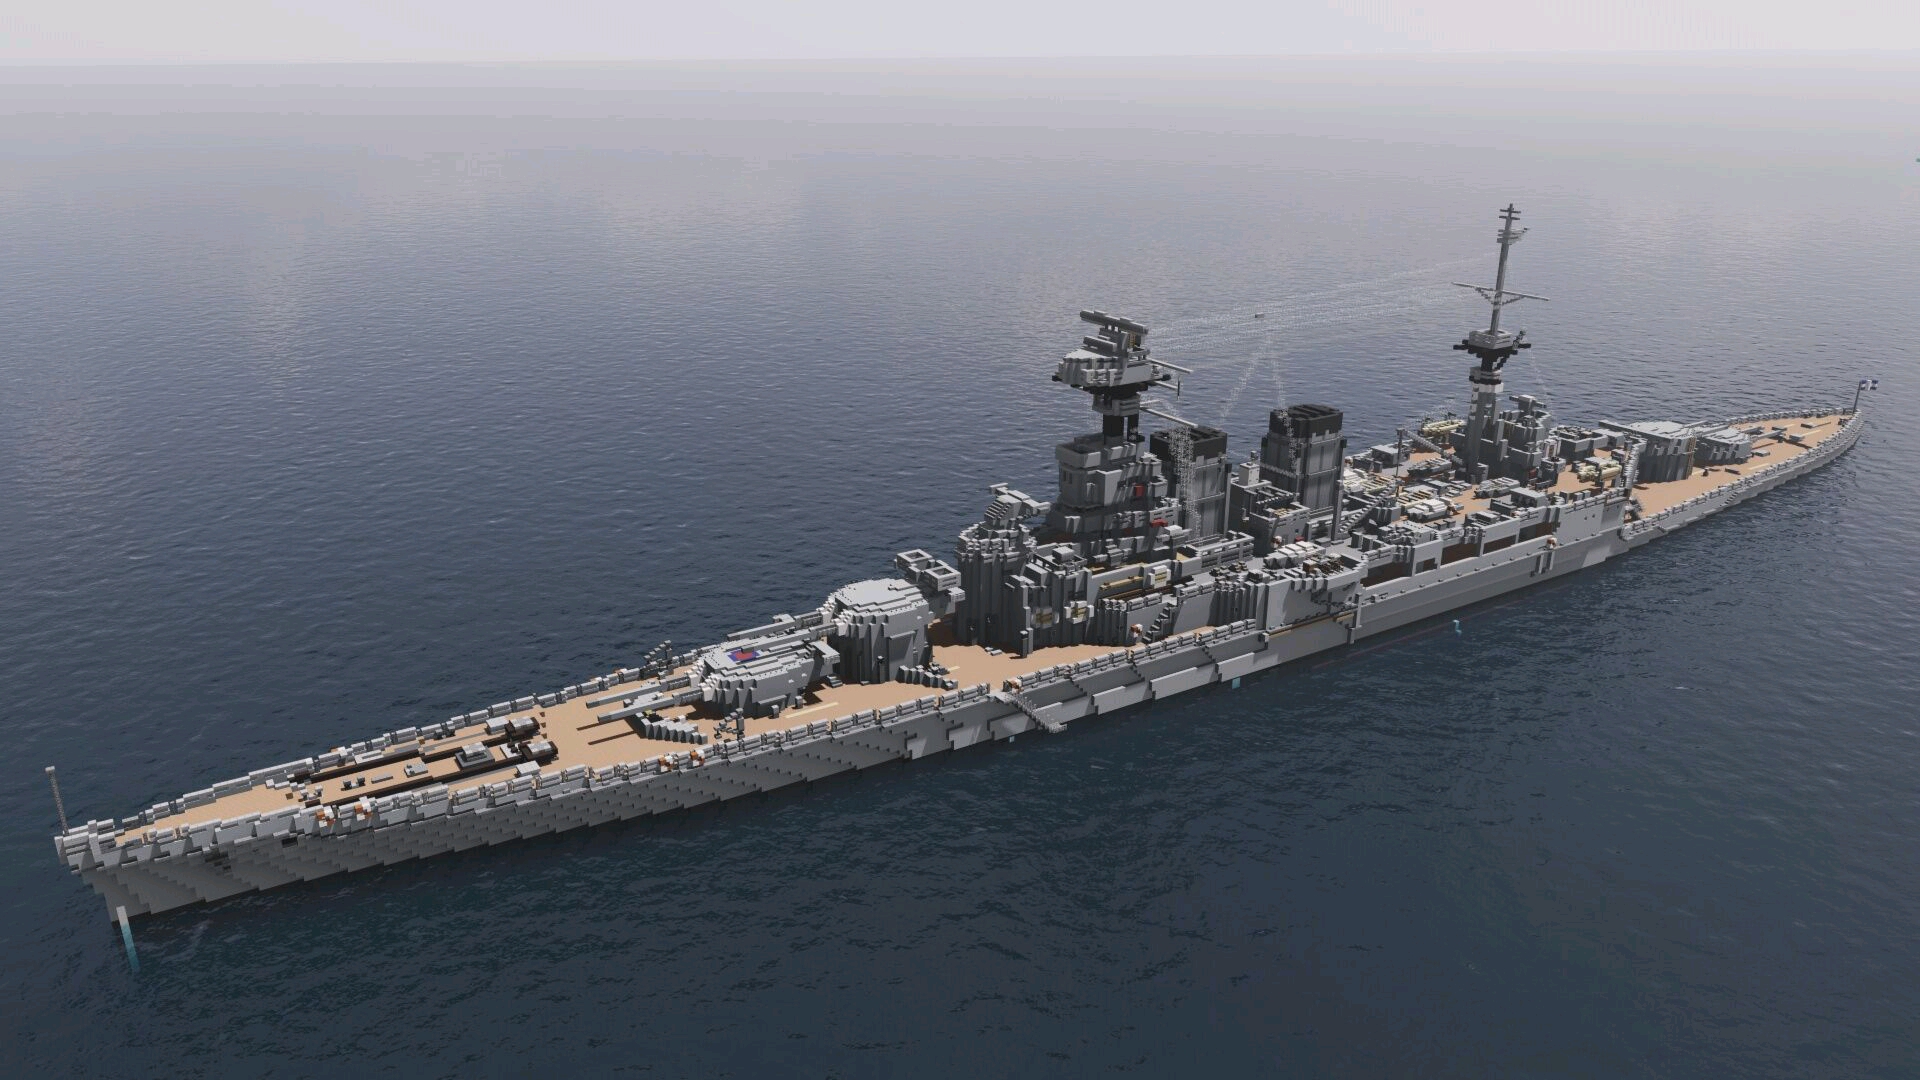 在这一背景下,皇家海军很快完成了狮级战列舰的设计工作并投入建造